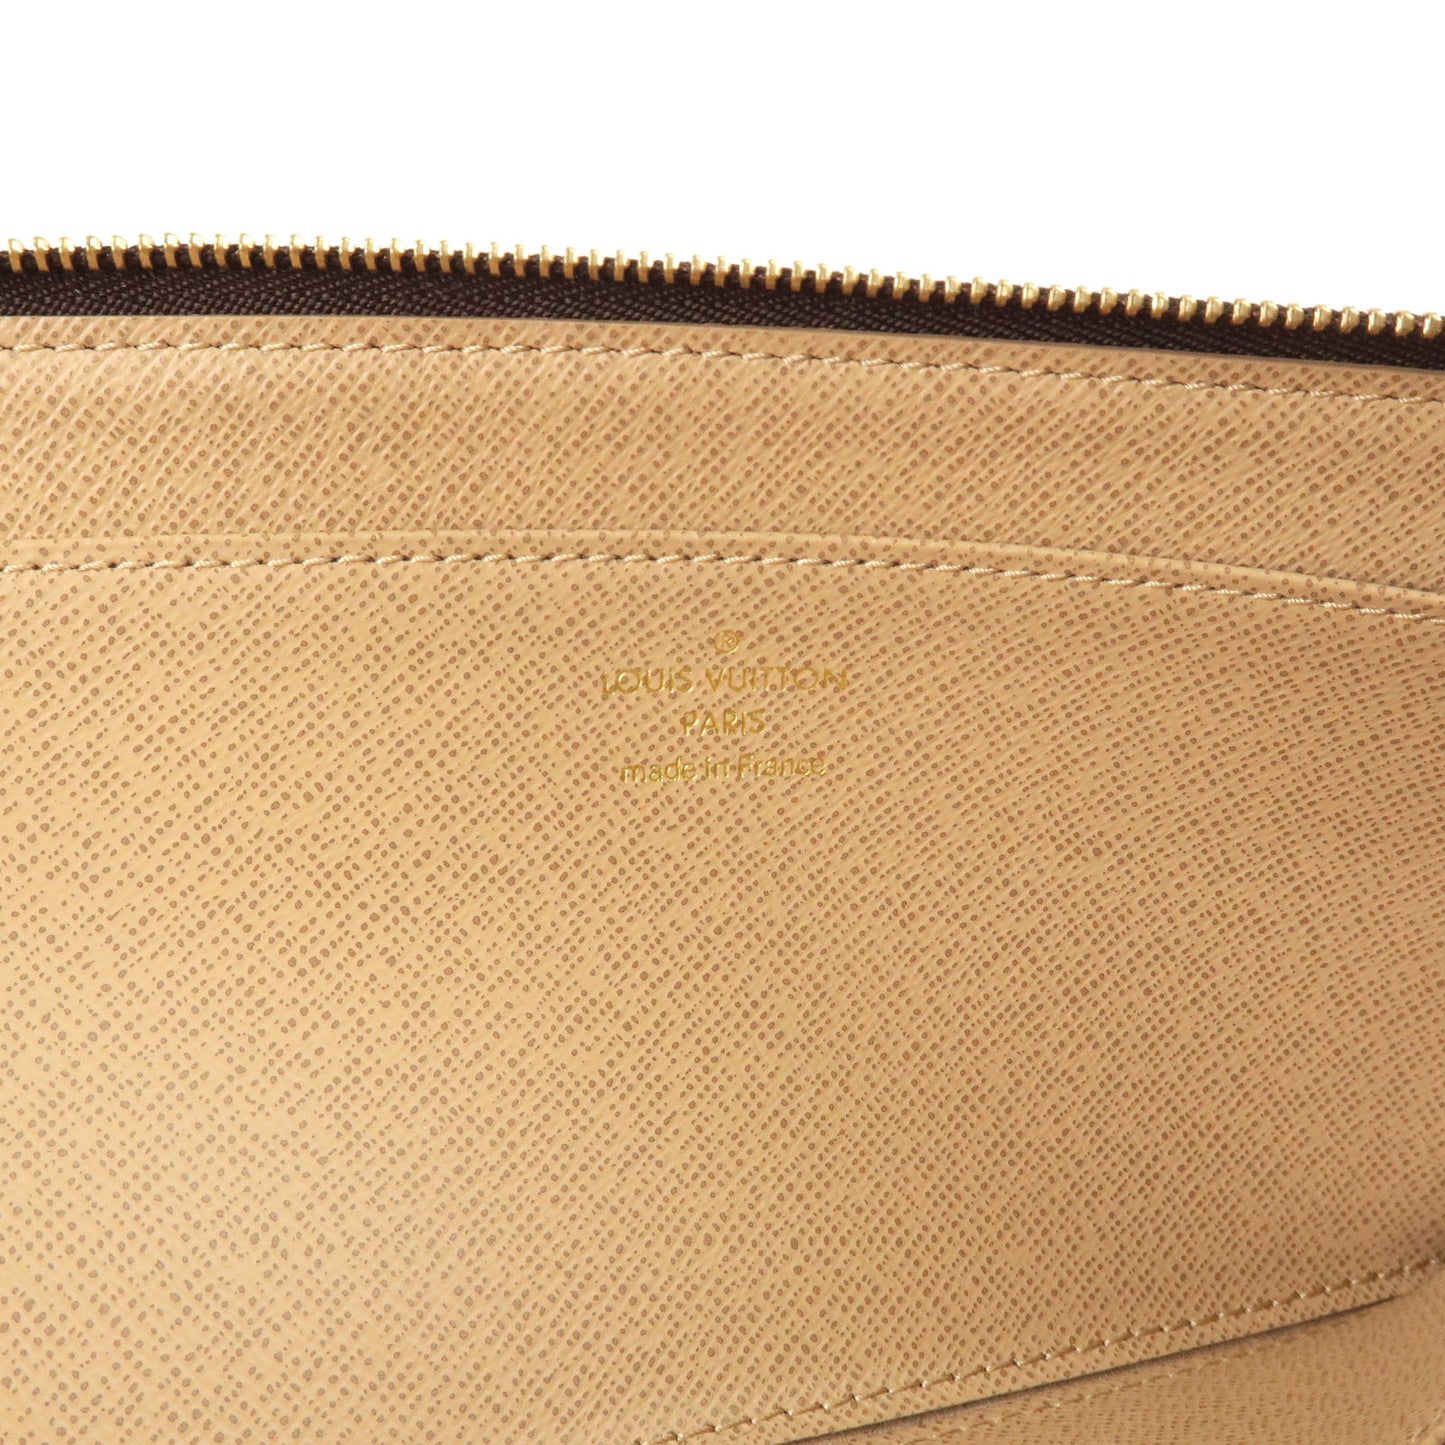 Lot - Louis Vuitton Monogram Complice Wallet